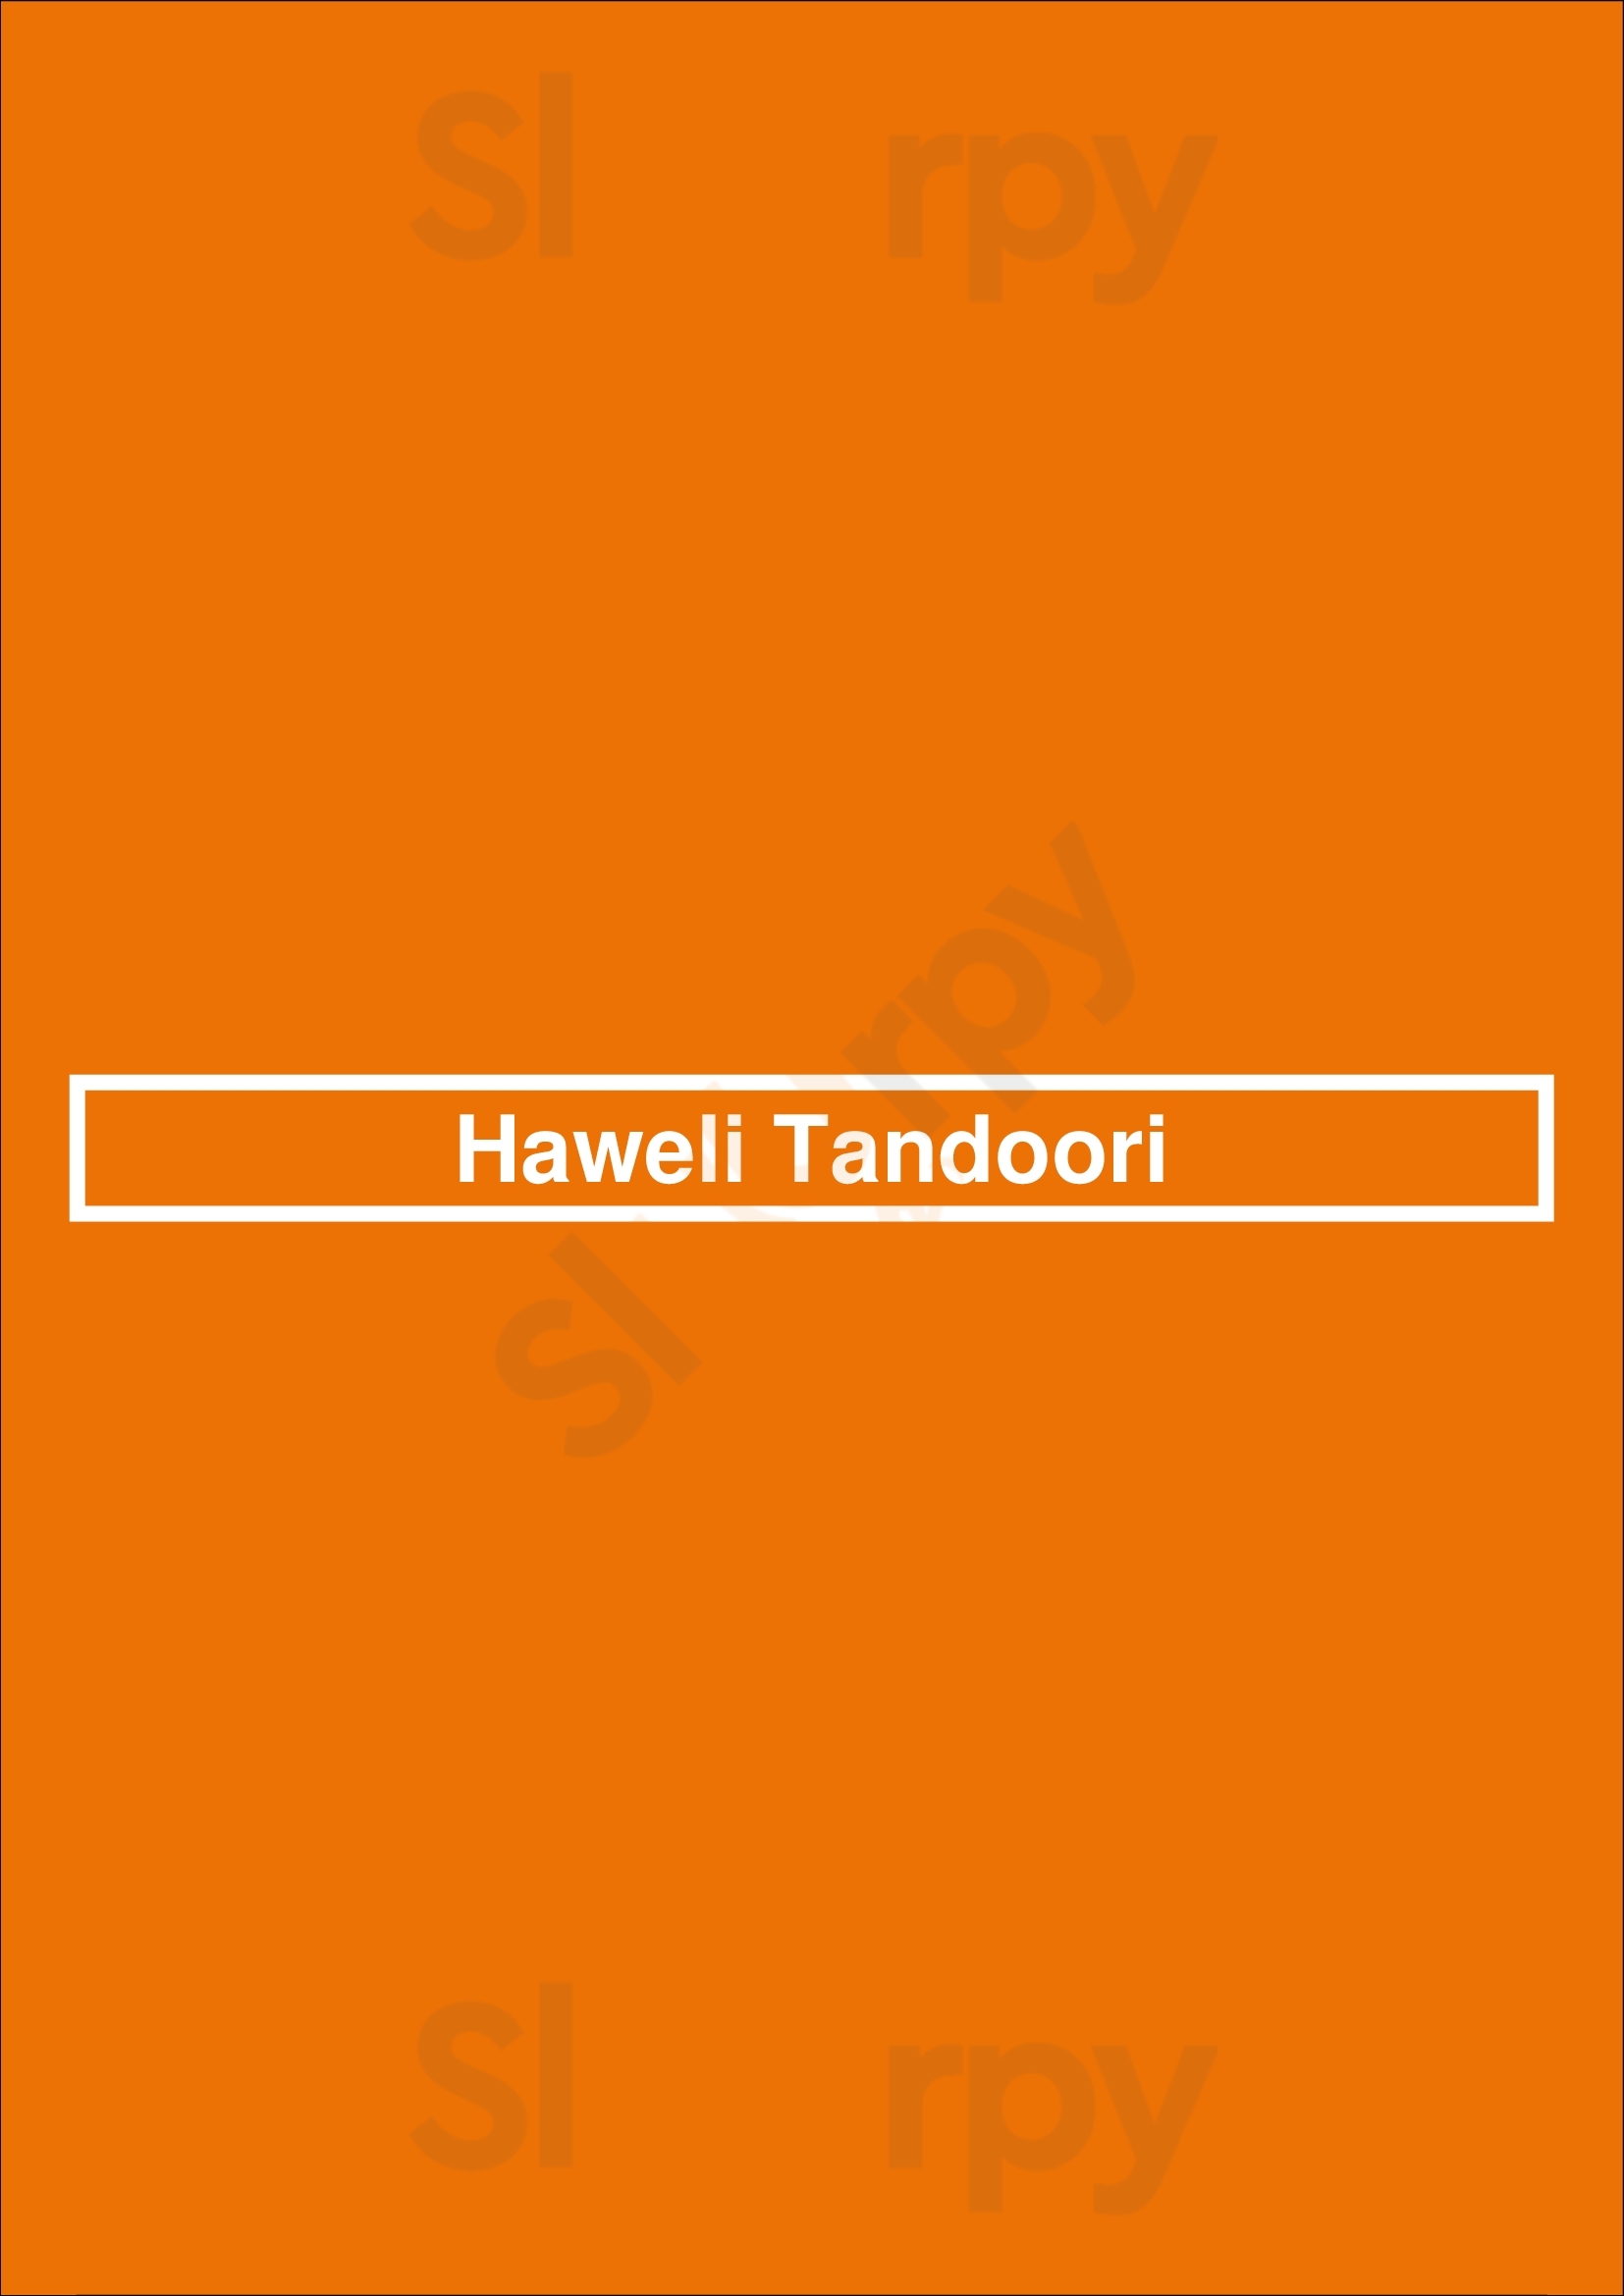 Haweli Tandoori Lisboa Menu - 1